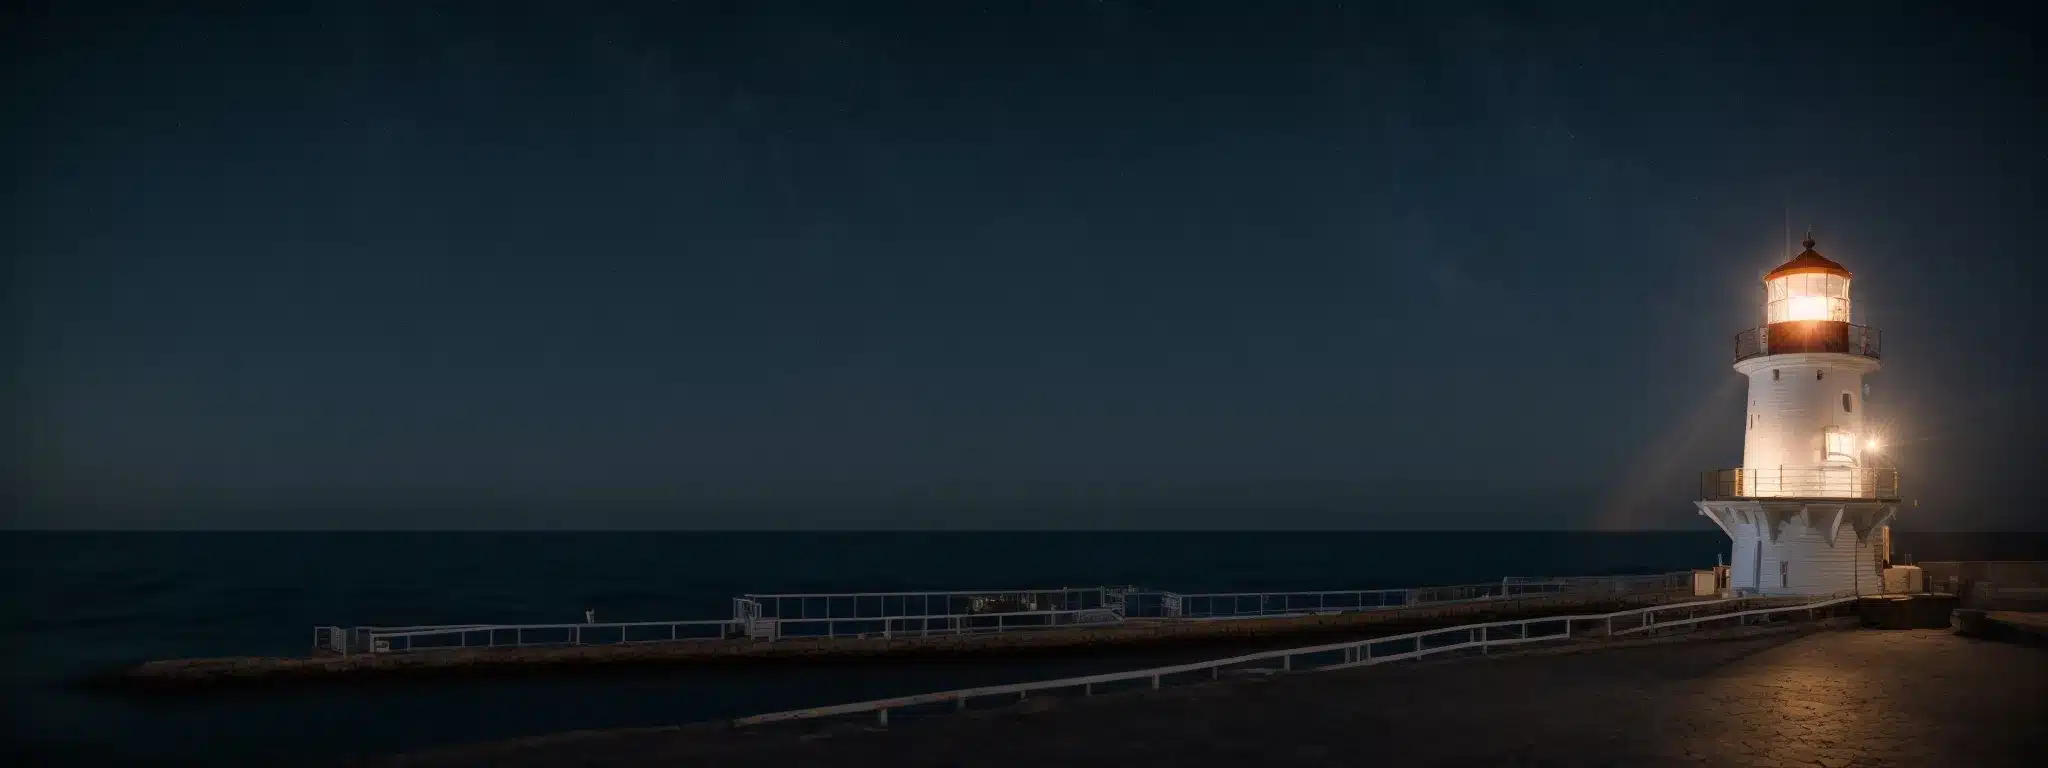 A Beacon Of Light Shining Atop A Lighthouse, Guiding Ships Through A Dark, Starry Night At Sea.